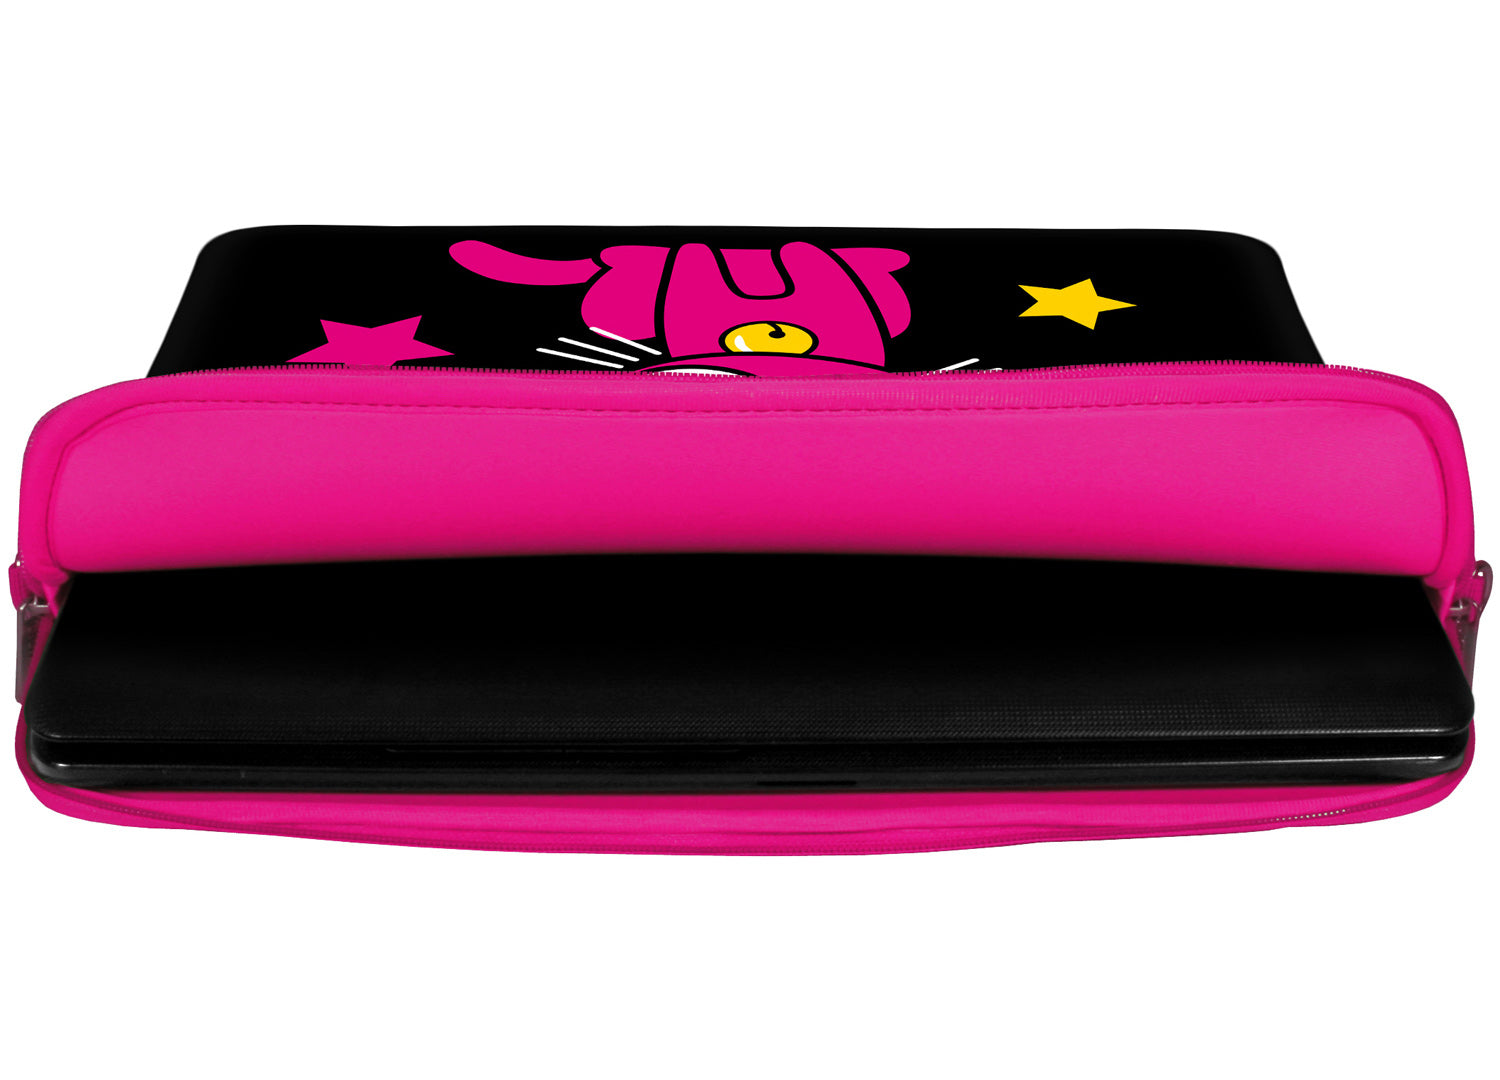 Innenansicht mit Schutzlippen der LS142 Kitty to Go Designer Laptop Tasche in pink aus wasserabweisendem Neopren